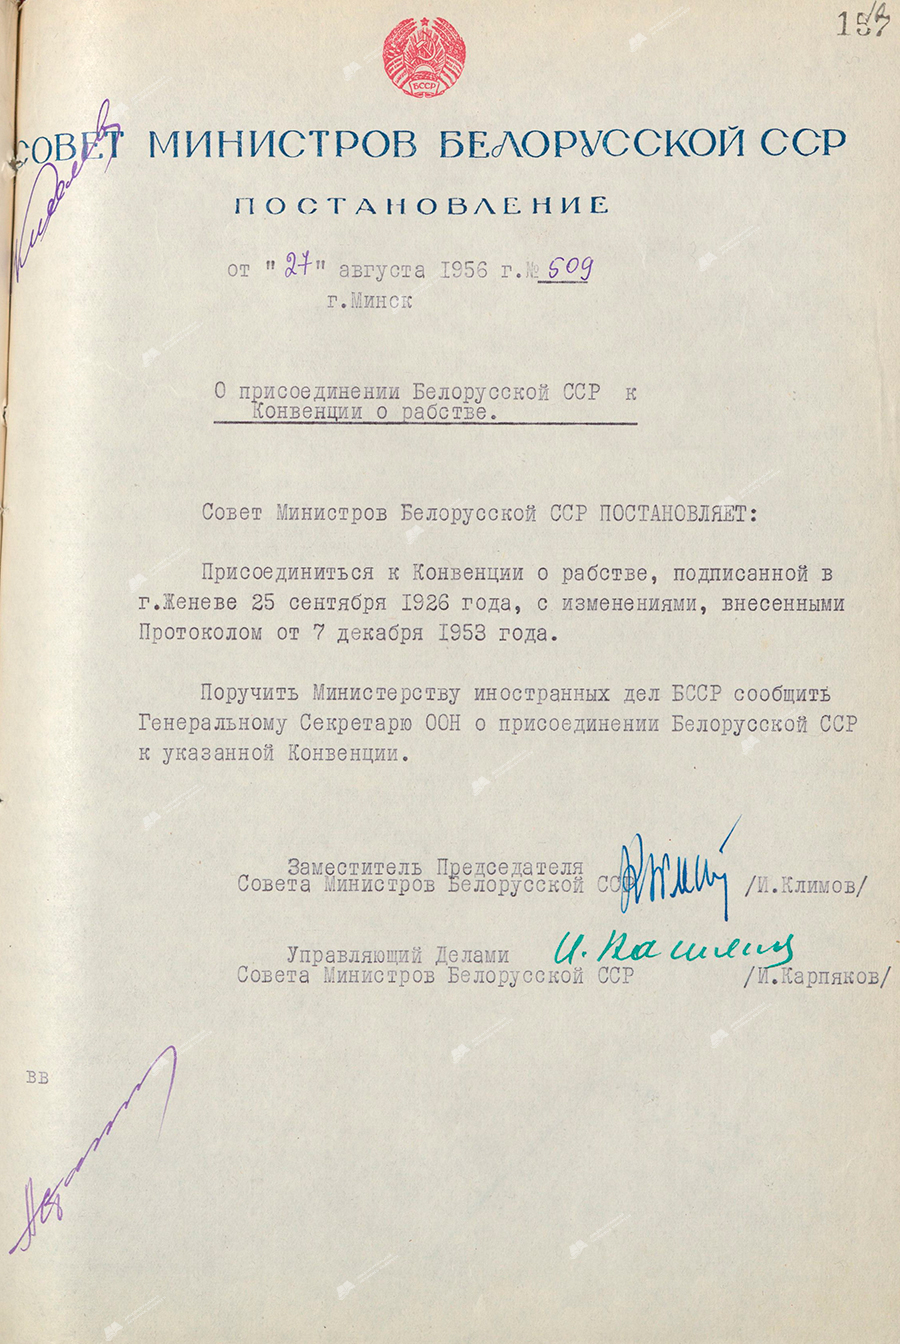 Beschluss Nr. 509 des Ministerrats der Weißrussischen SSR «Über den Beitritt der Weißrussischen SSR zum Sklavereiübereinkommen»-с. 0